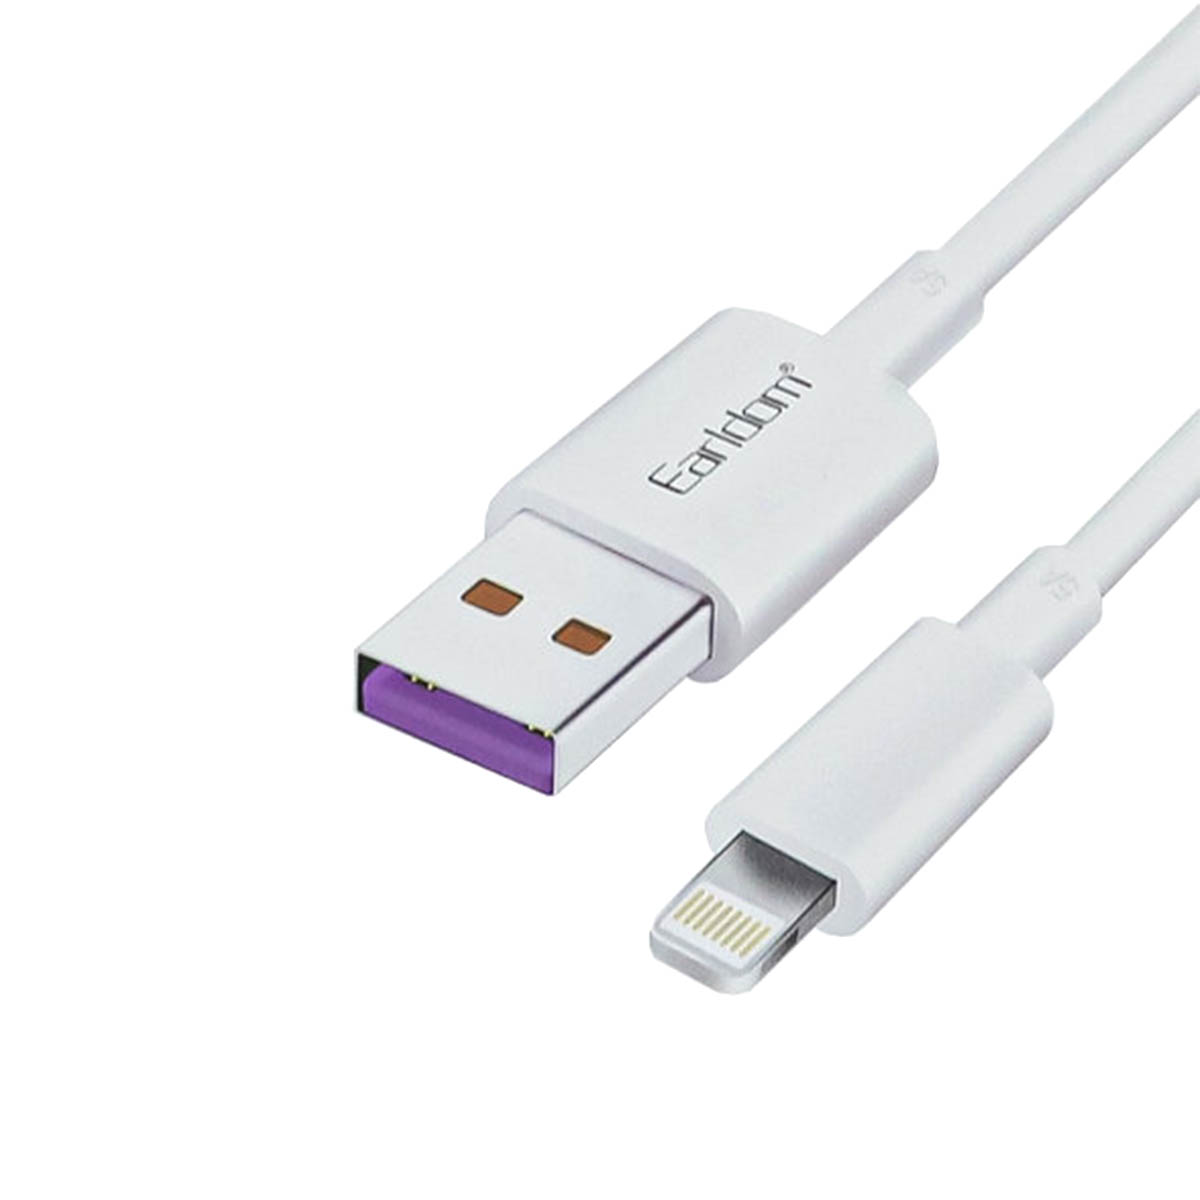 Кабель Earldom EC-080I USB Lightning 8 pin, 5А, длина 1 метр, силикон, цвет белый